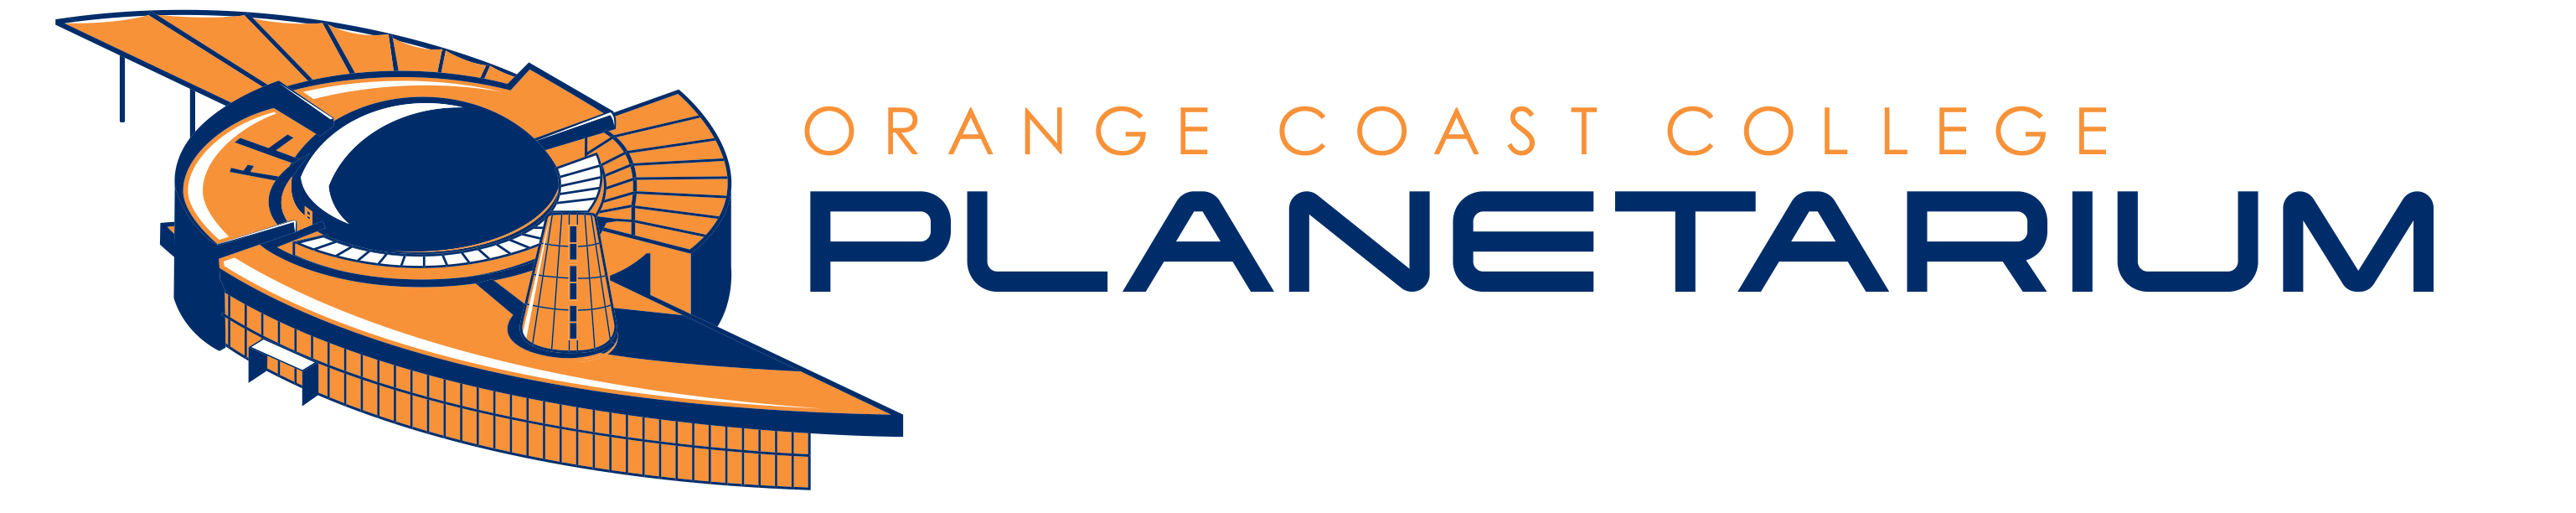 Orange Coast College Plantarium Logo with Image of the Planetarium Building